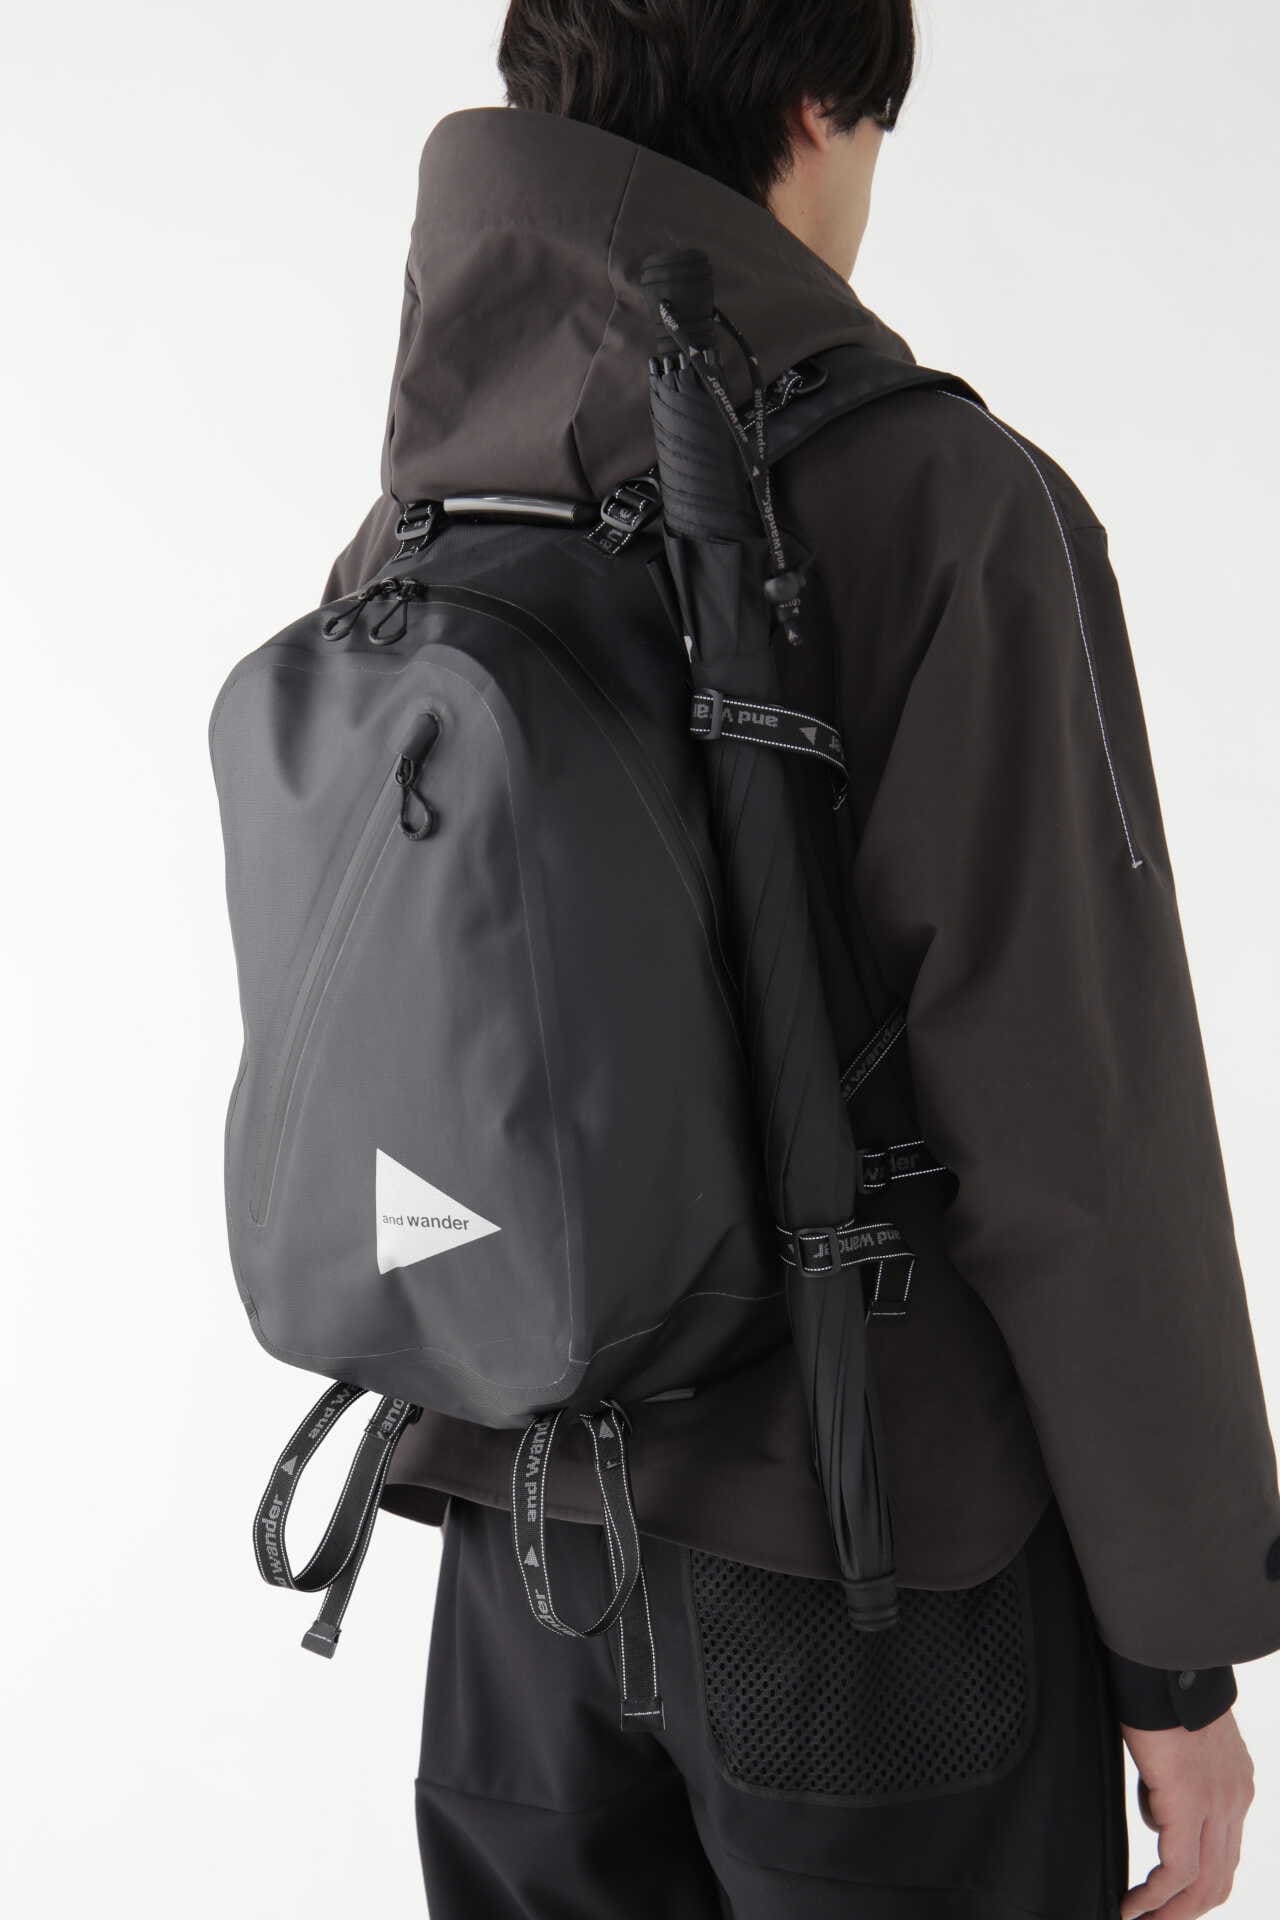 新品and wander waterproof daypack 20Lバッグパック